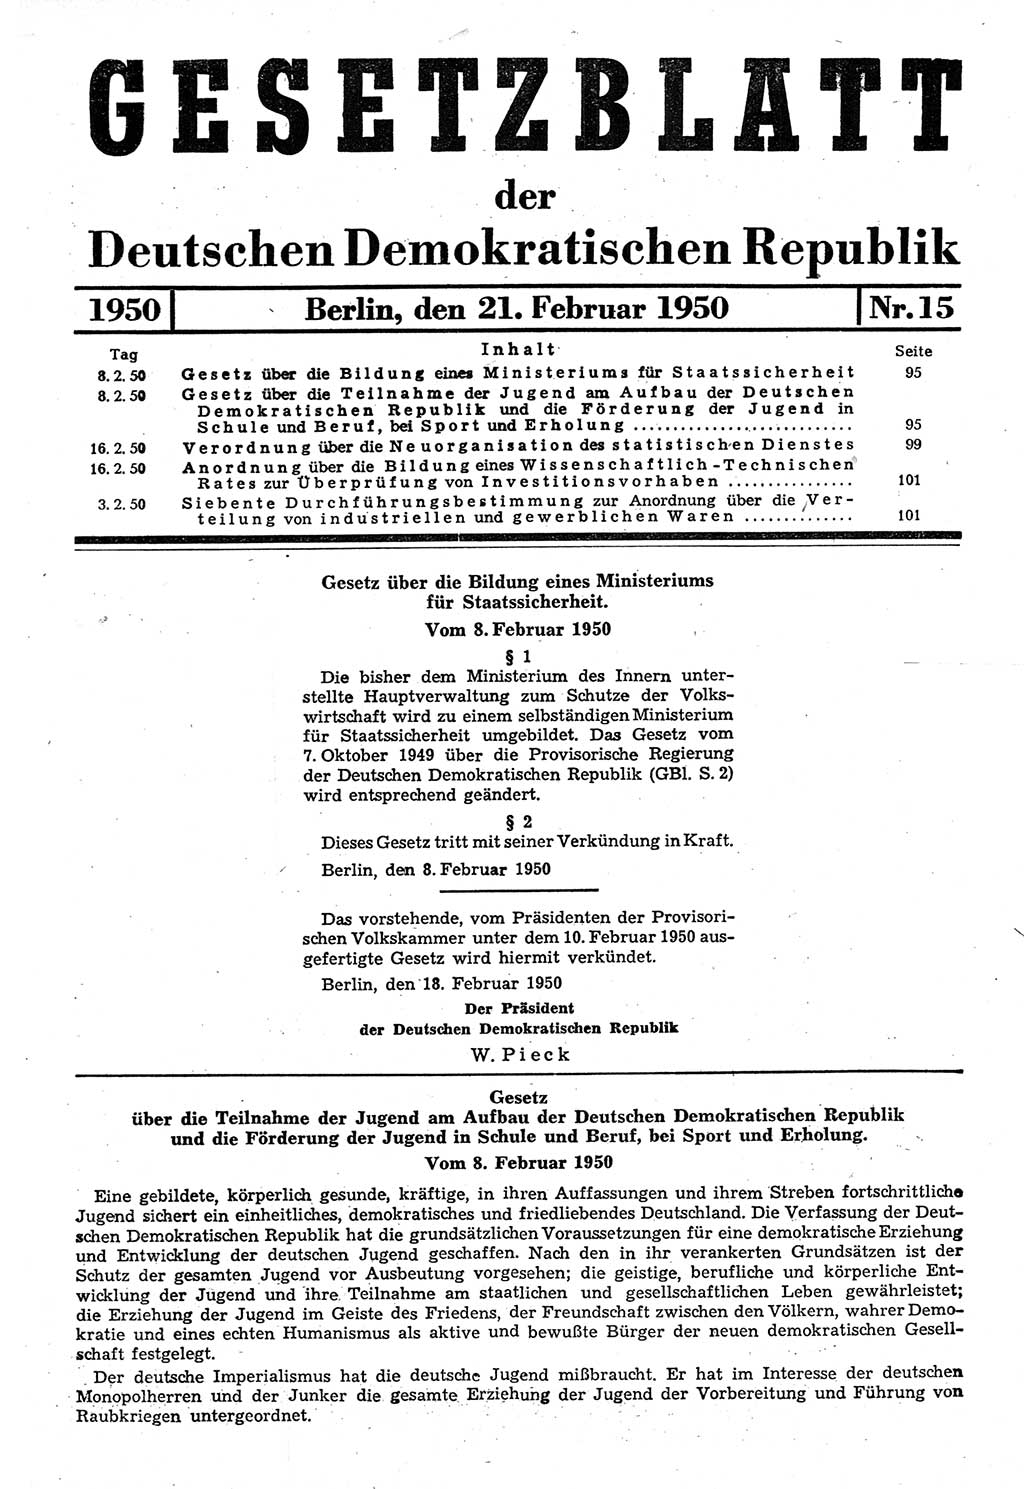 Gesetzblatt (GBl.) der Deutschen Demokratischen Republik (DDR) 1950, Seite 95 (GBl. DDR 1950, S. 95)